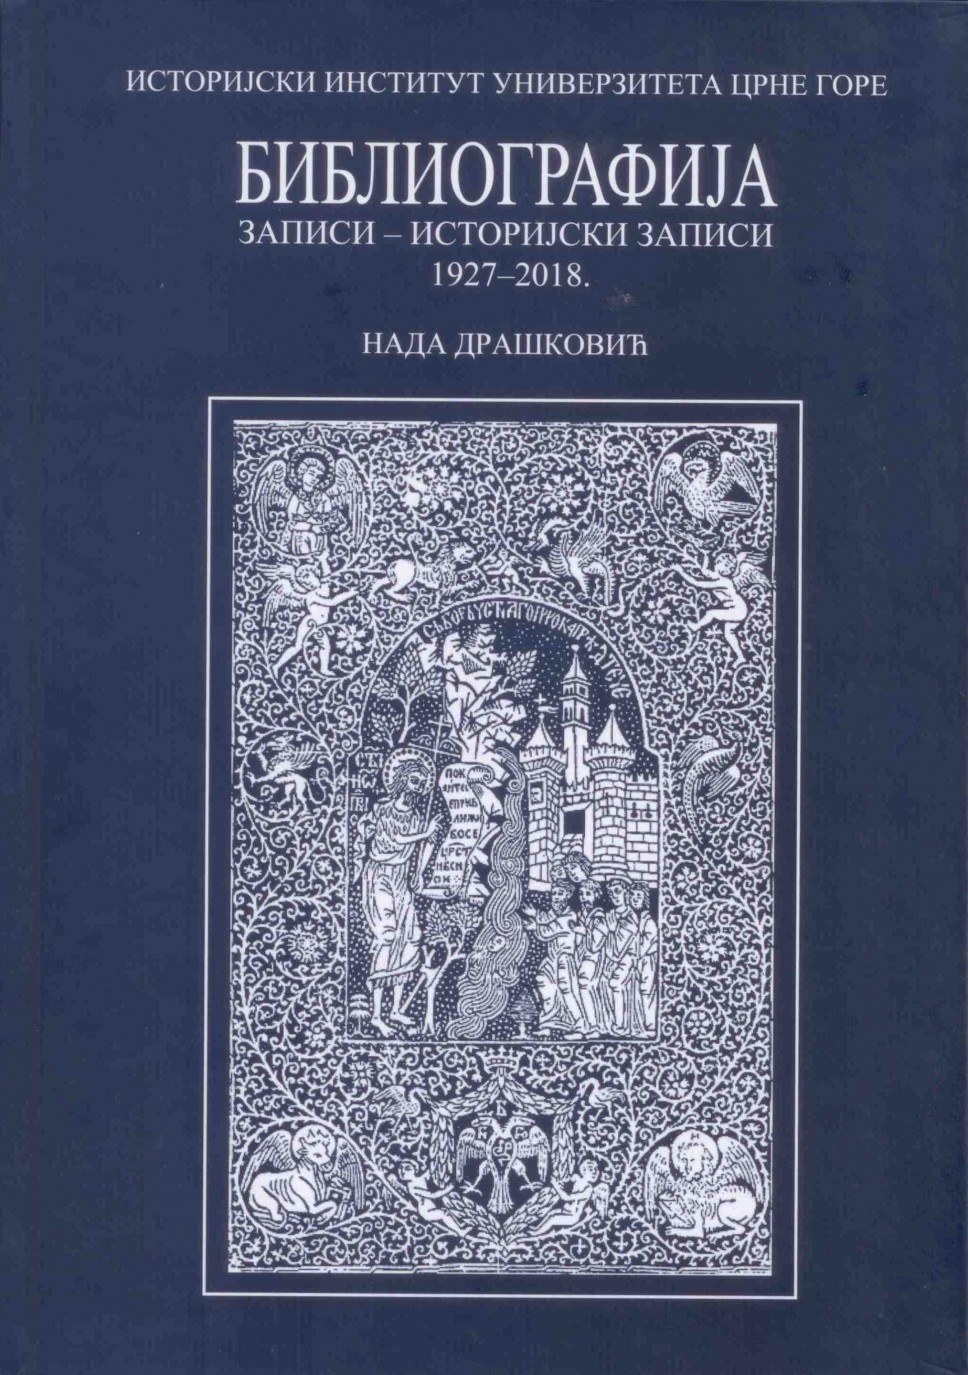 Bibliografije Zapisa - Istorijskih zapisa (1927-2018)